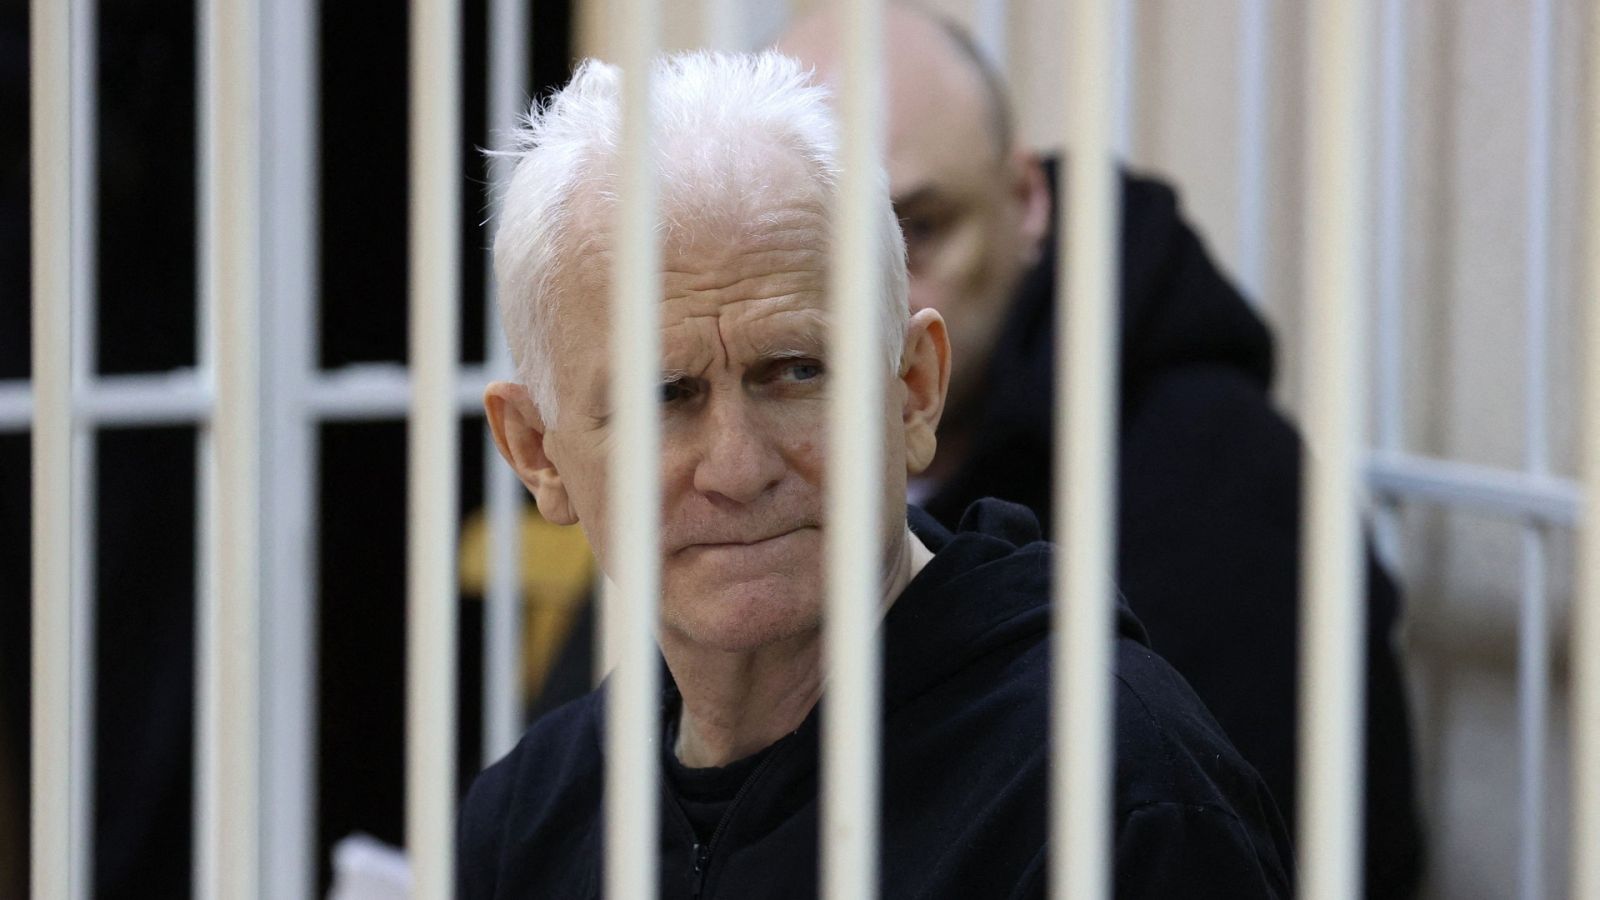 Bialiatski durante el juicio en Minsk